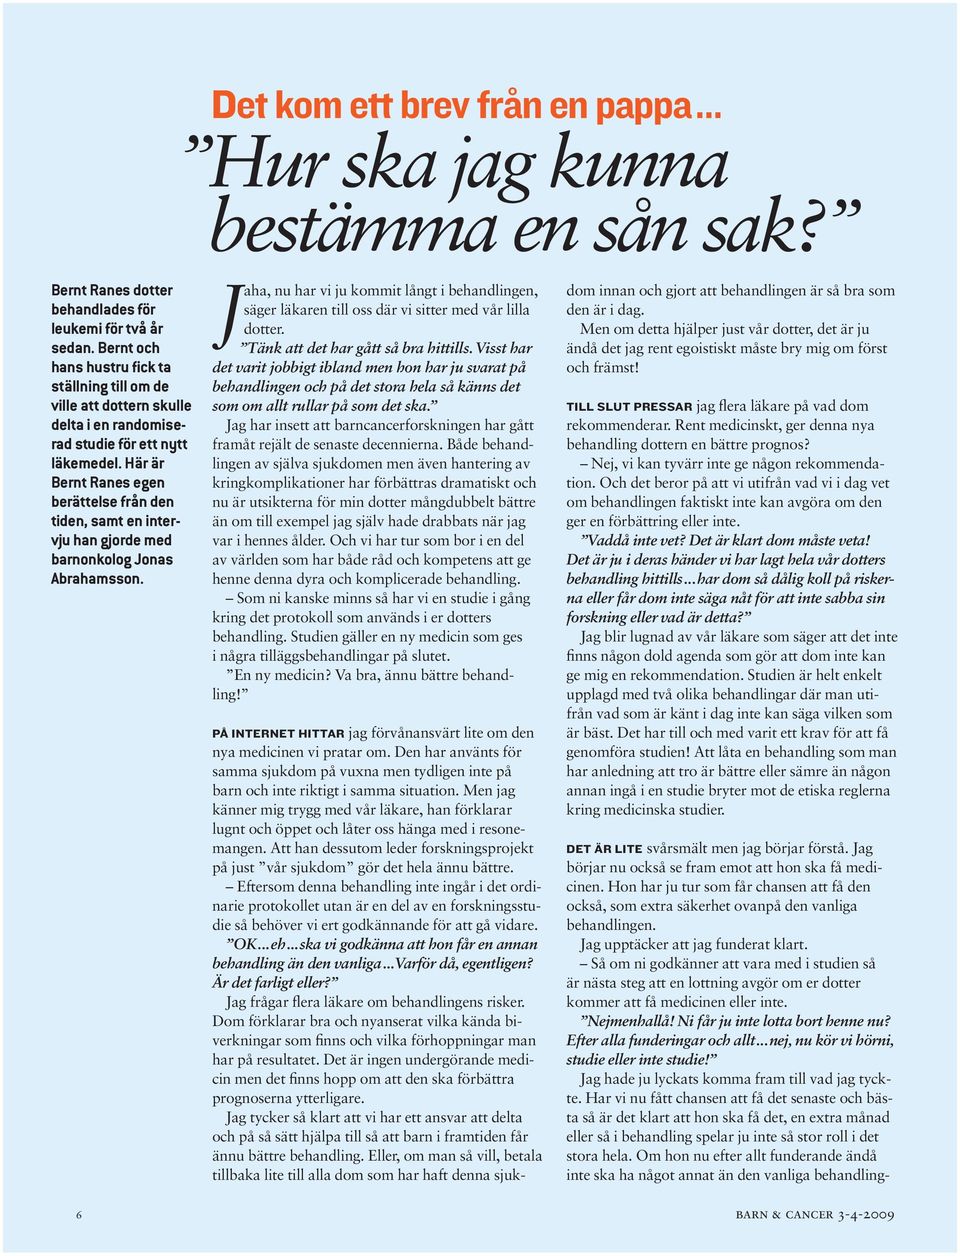 Här är Bernt Ranes egen berättelse från den tiden, samt en intervju han gjorde med barnonkolog Jonas Abrahamsson.